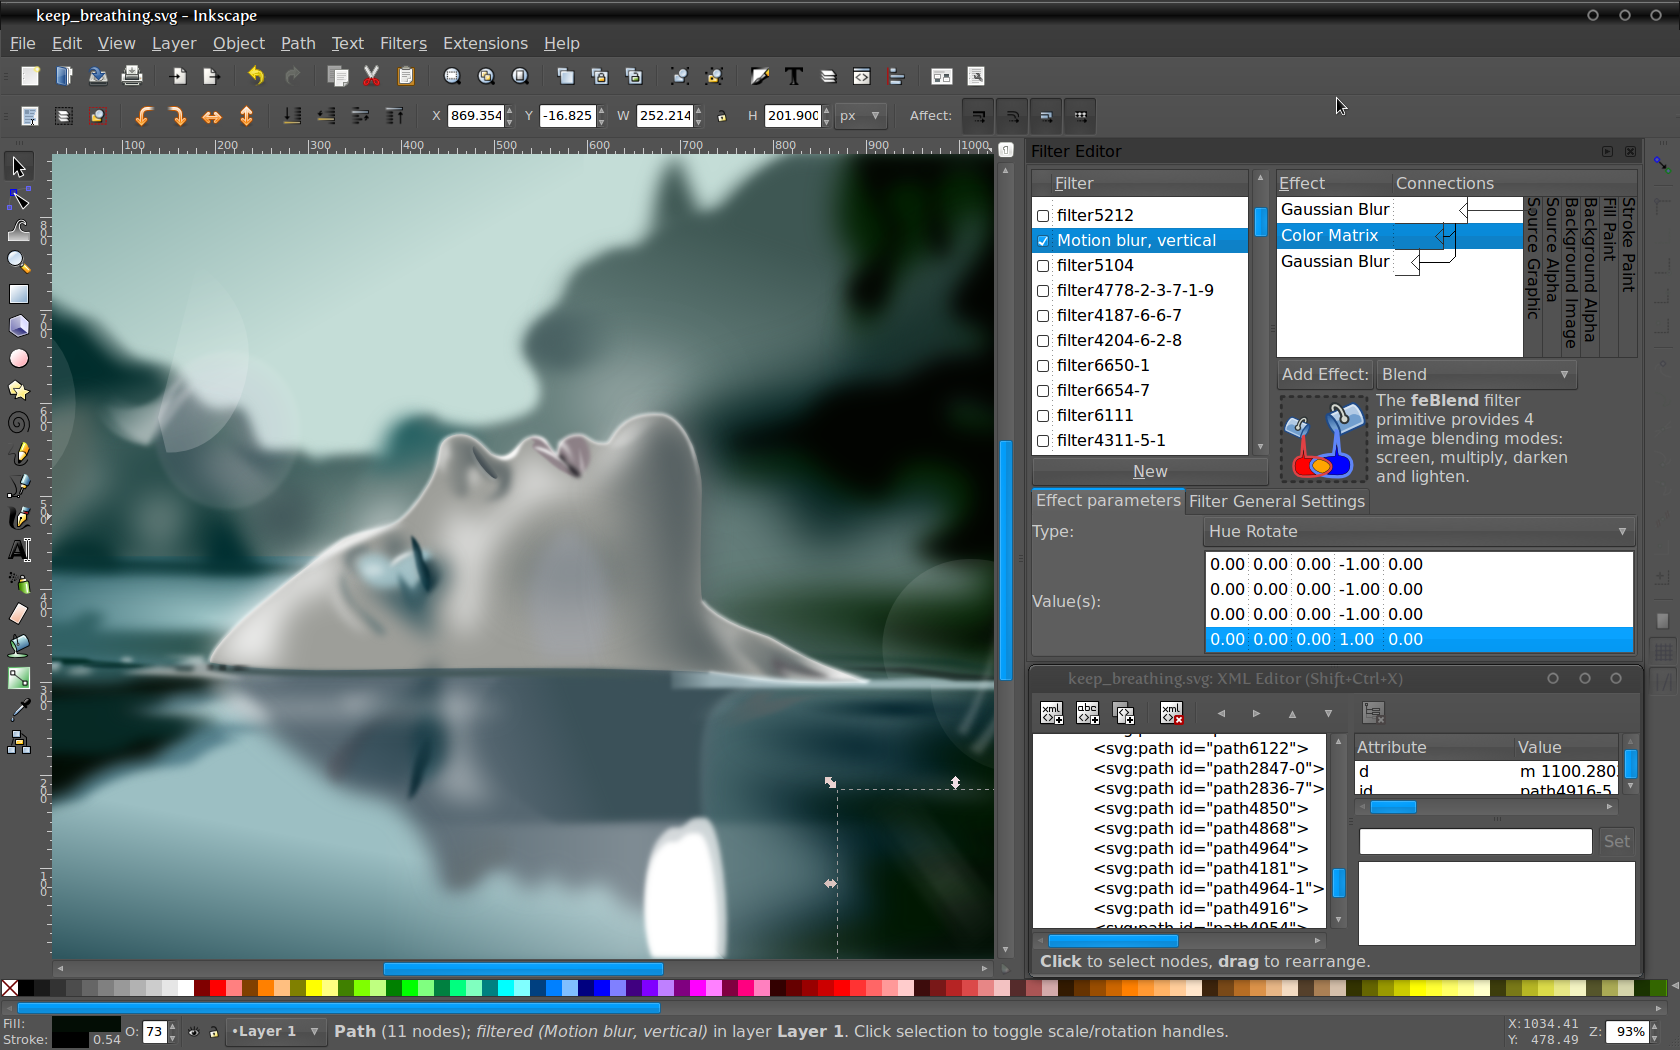 من أشهر برامج الرسم و التصميم بالحاسب برنامج انكسكيب inkscape